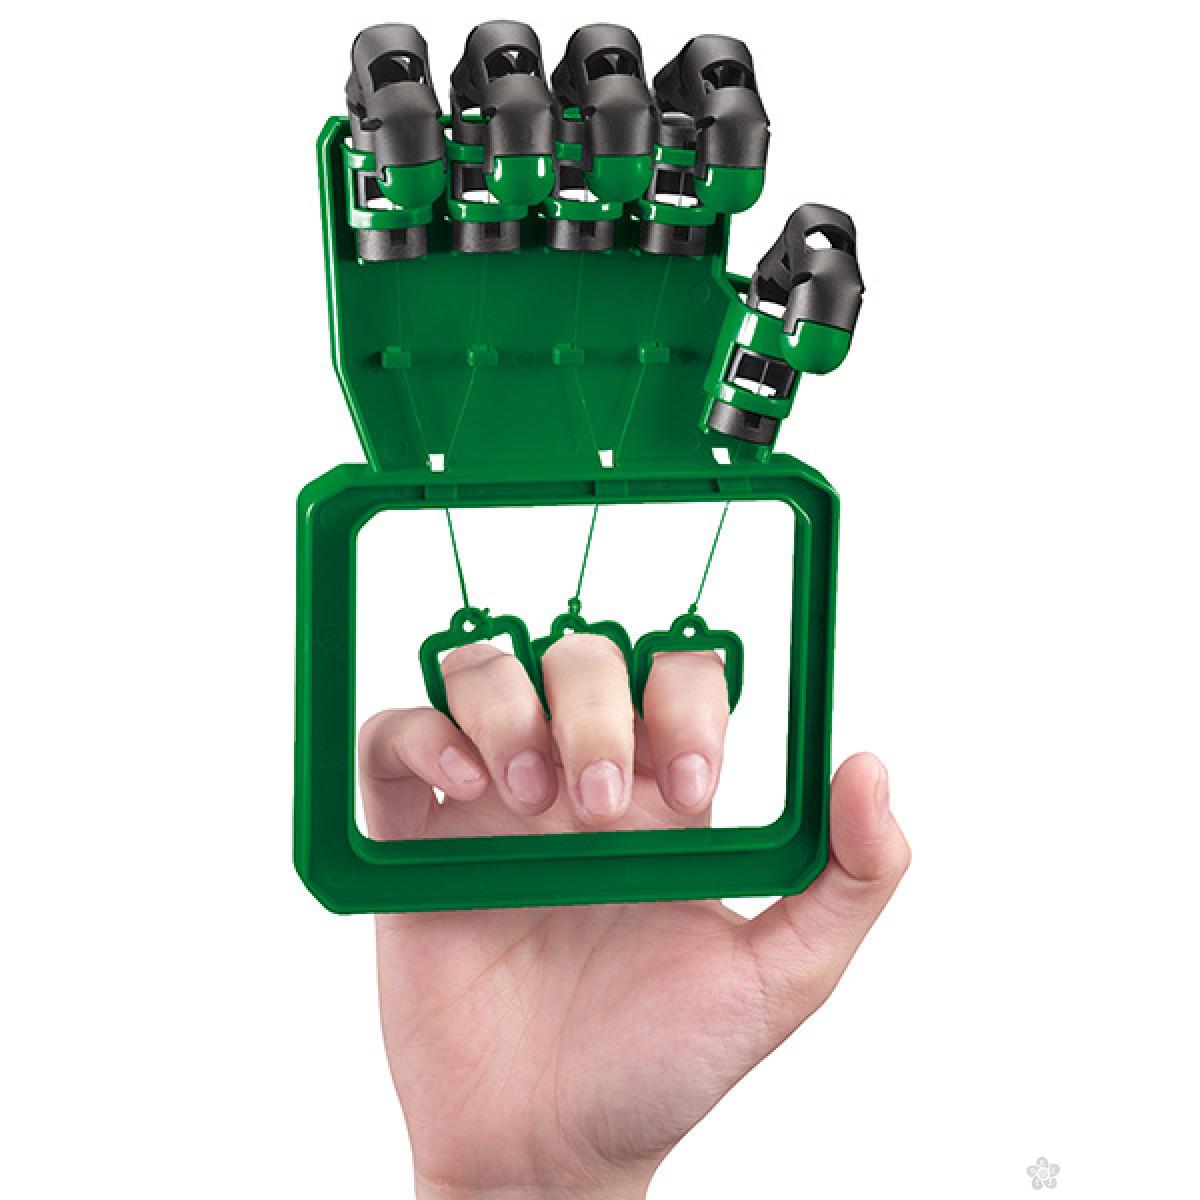 4M maketa Robotic Hand, 4M03284 